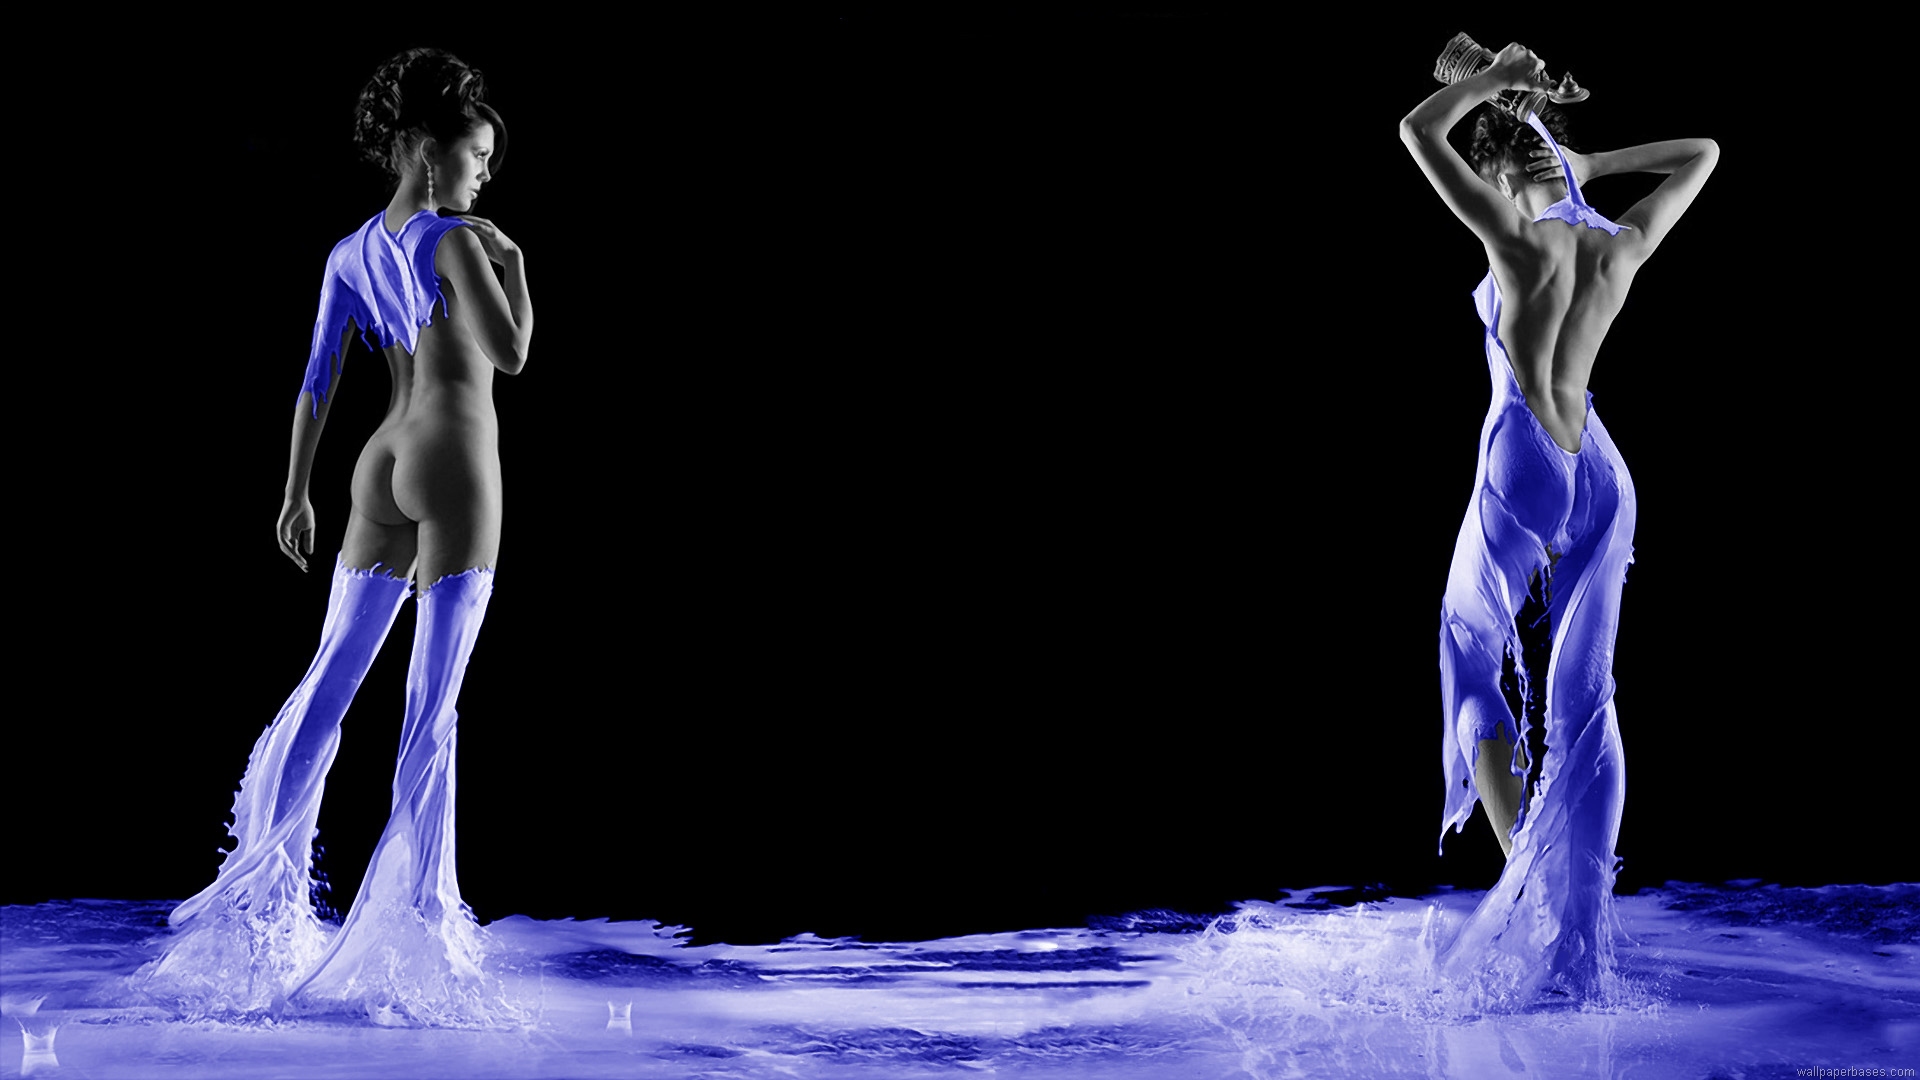 1080 x 1920 pixels fonds d'écran hd,l'eau,danseur,danse moderne,performance,humain